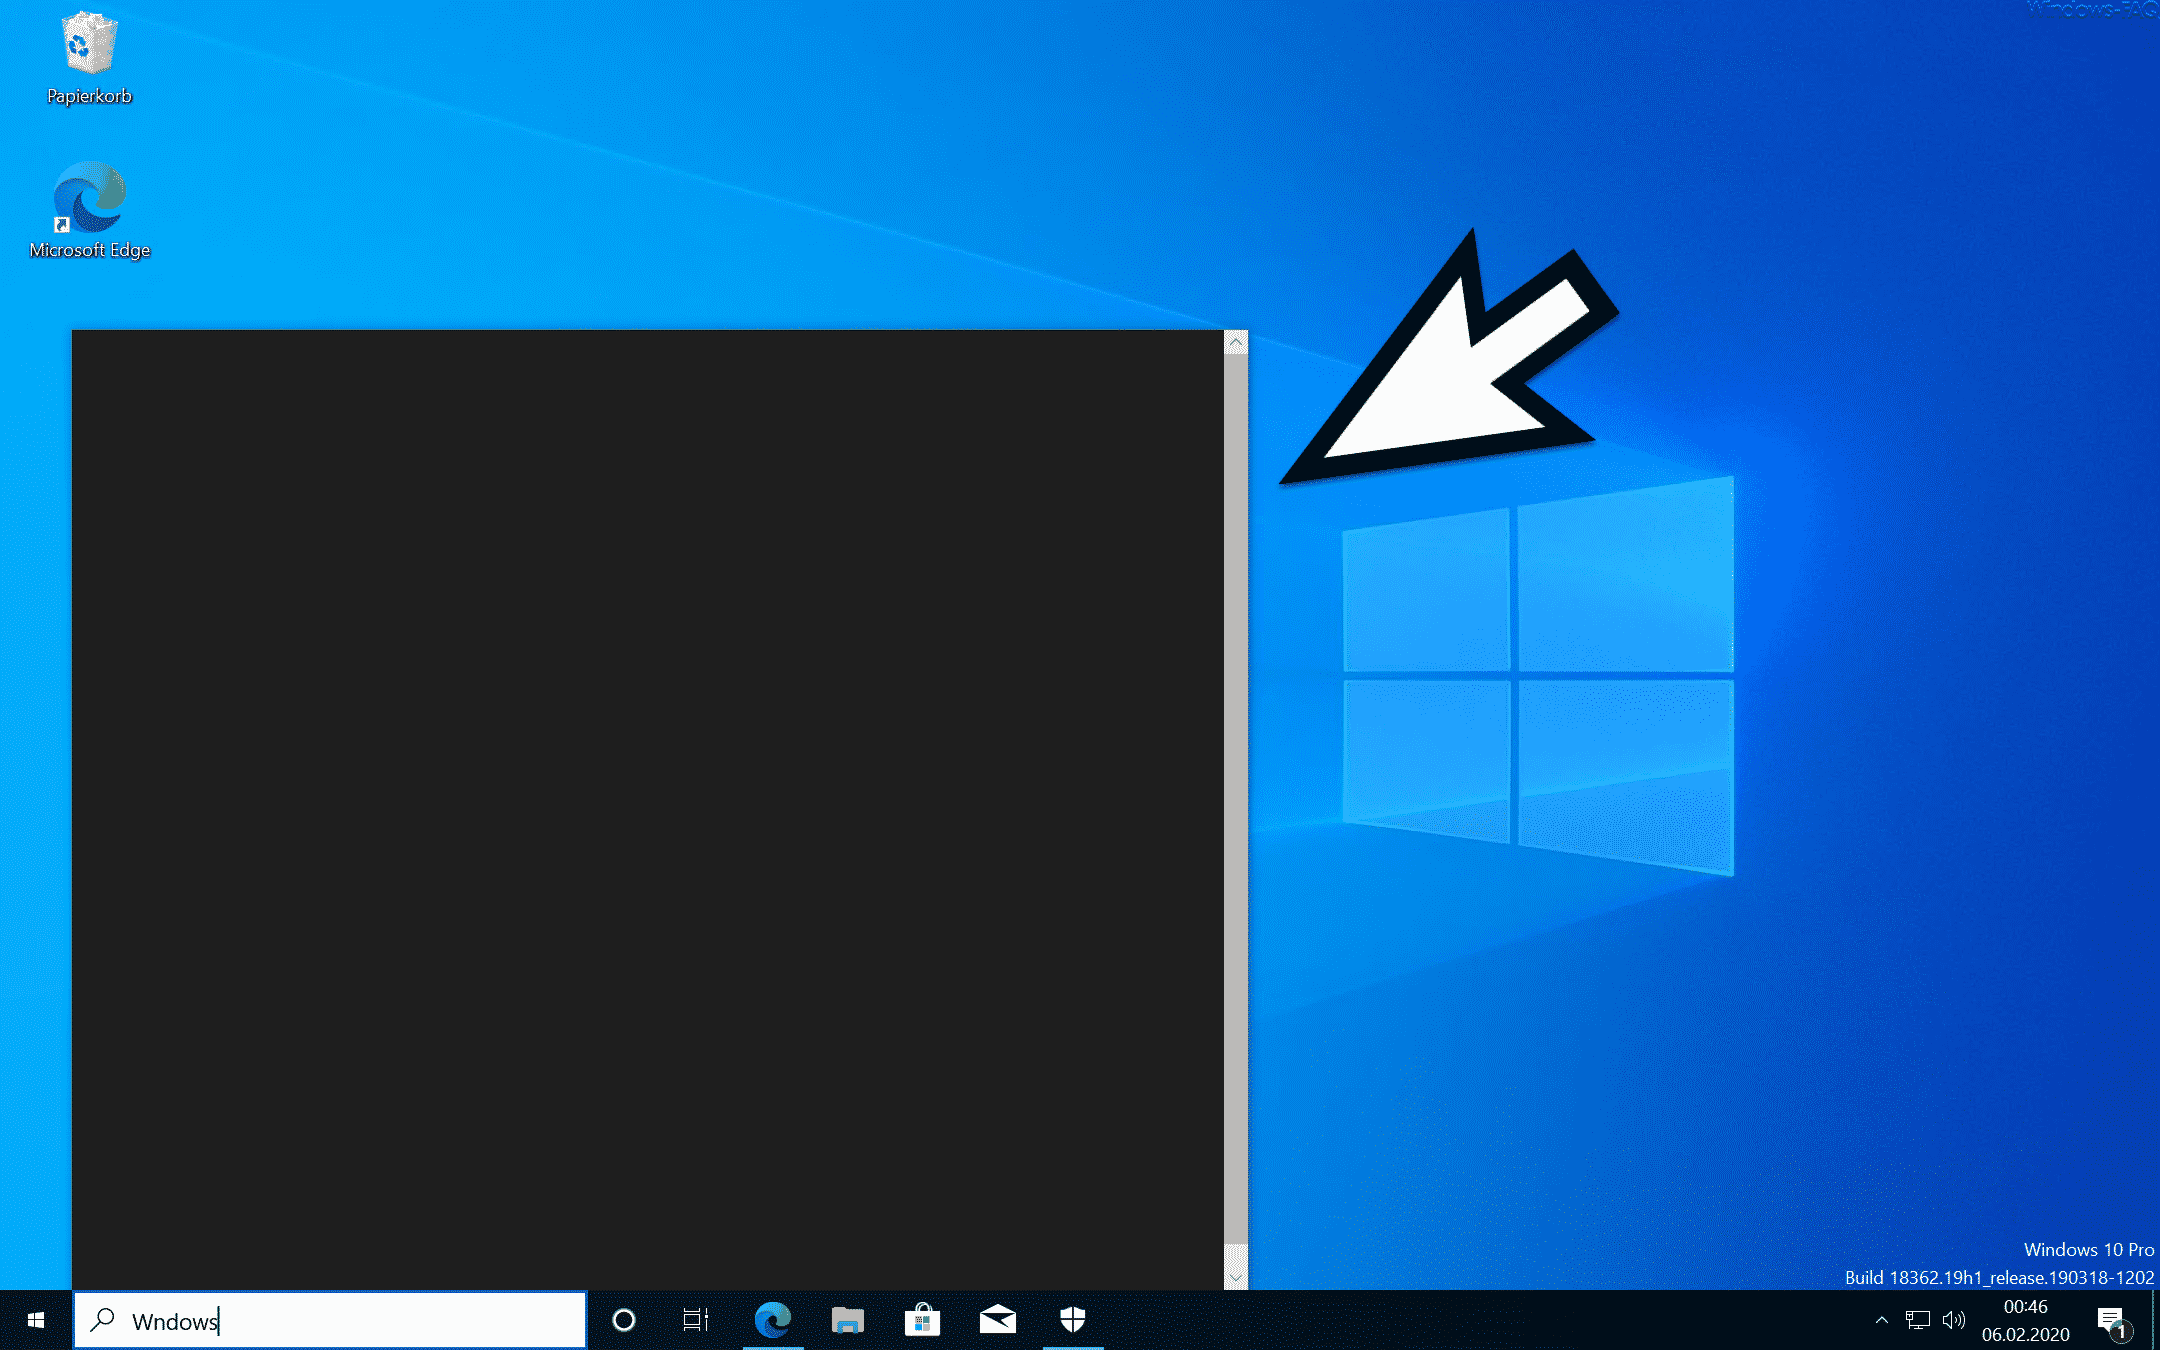 Windows 10 Suche funktioniert nicht – Suchfenster bleibt leer